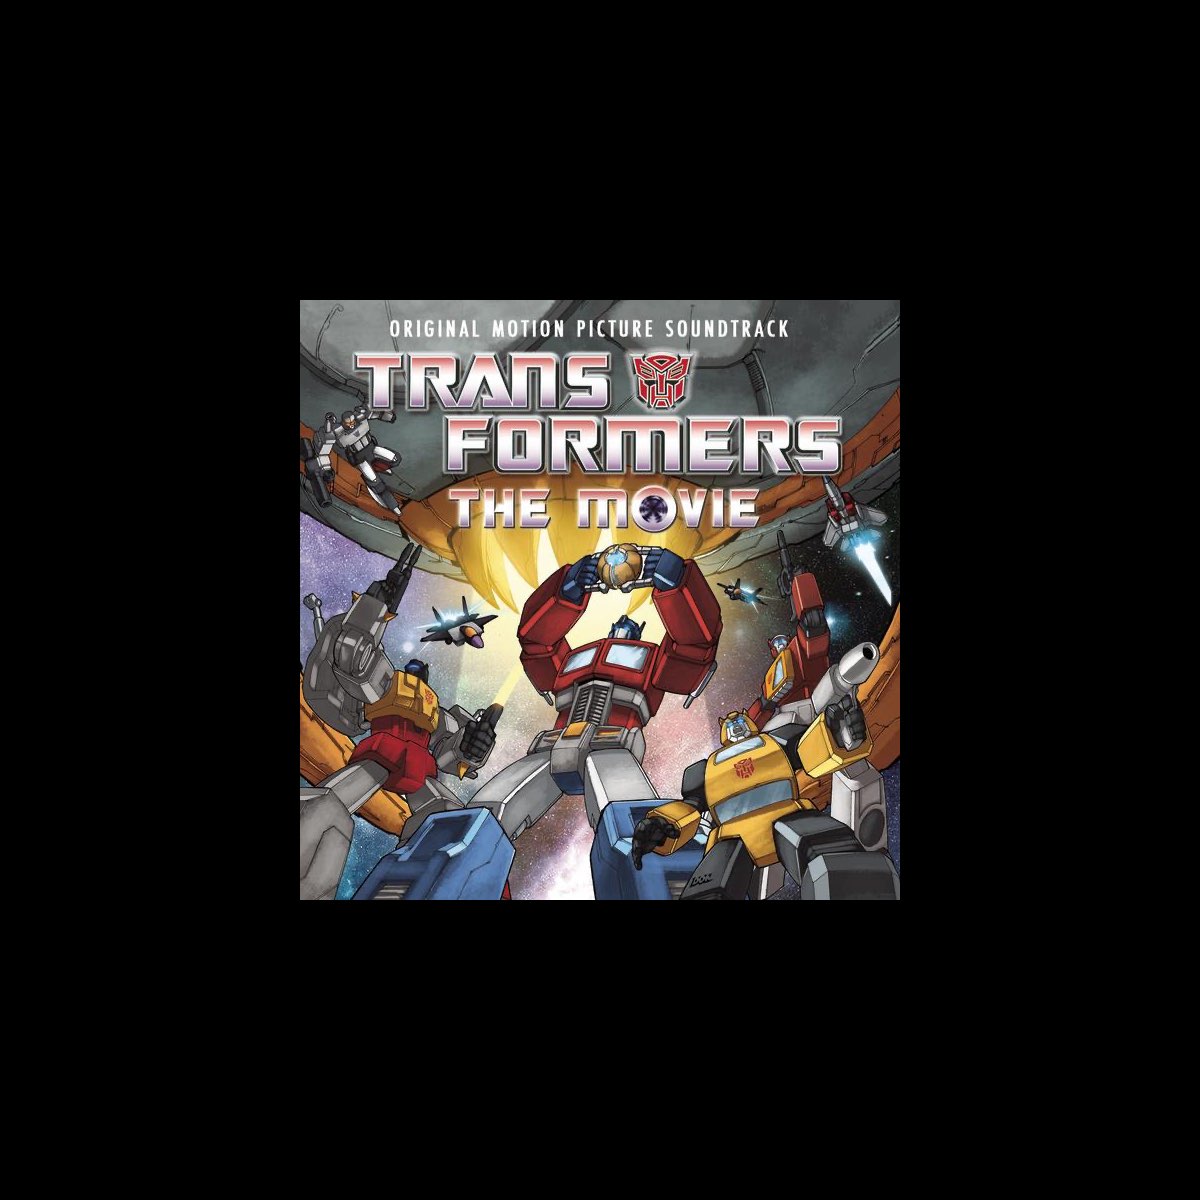 Transformers - O Filme - 1986 - Parte 7 - Dublado 